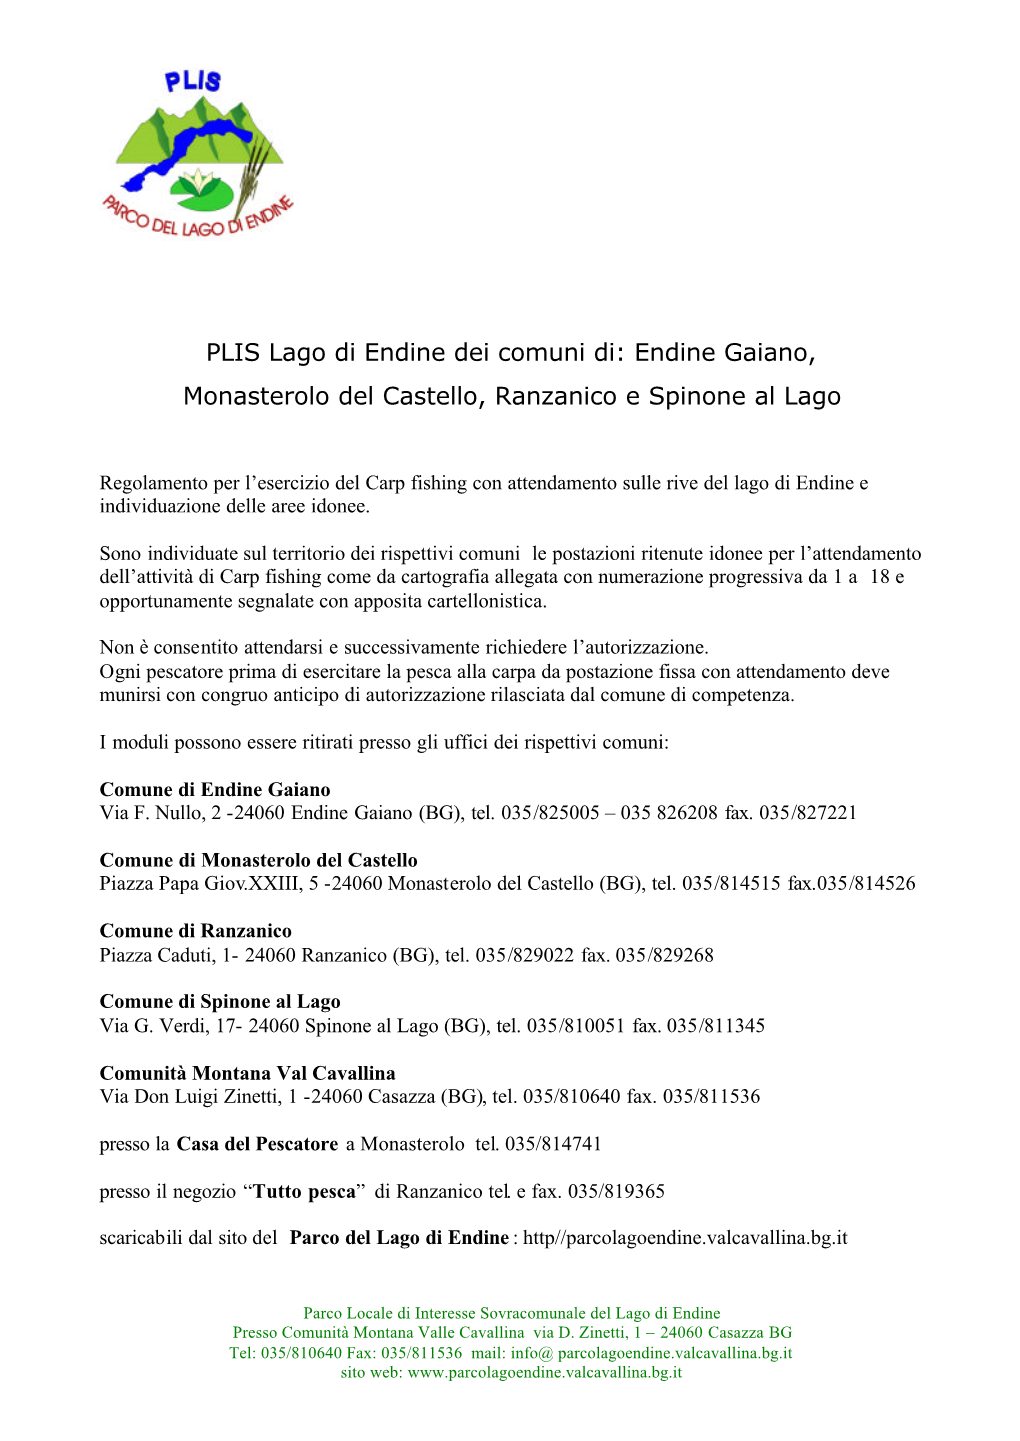 Endine Gaiano, Monasterolo Del Castello, Ranzanico E Spinone Al Lago